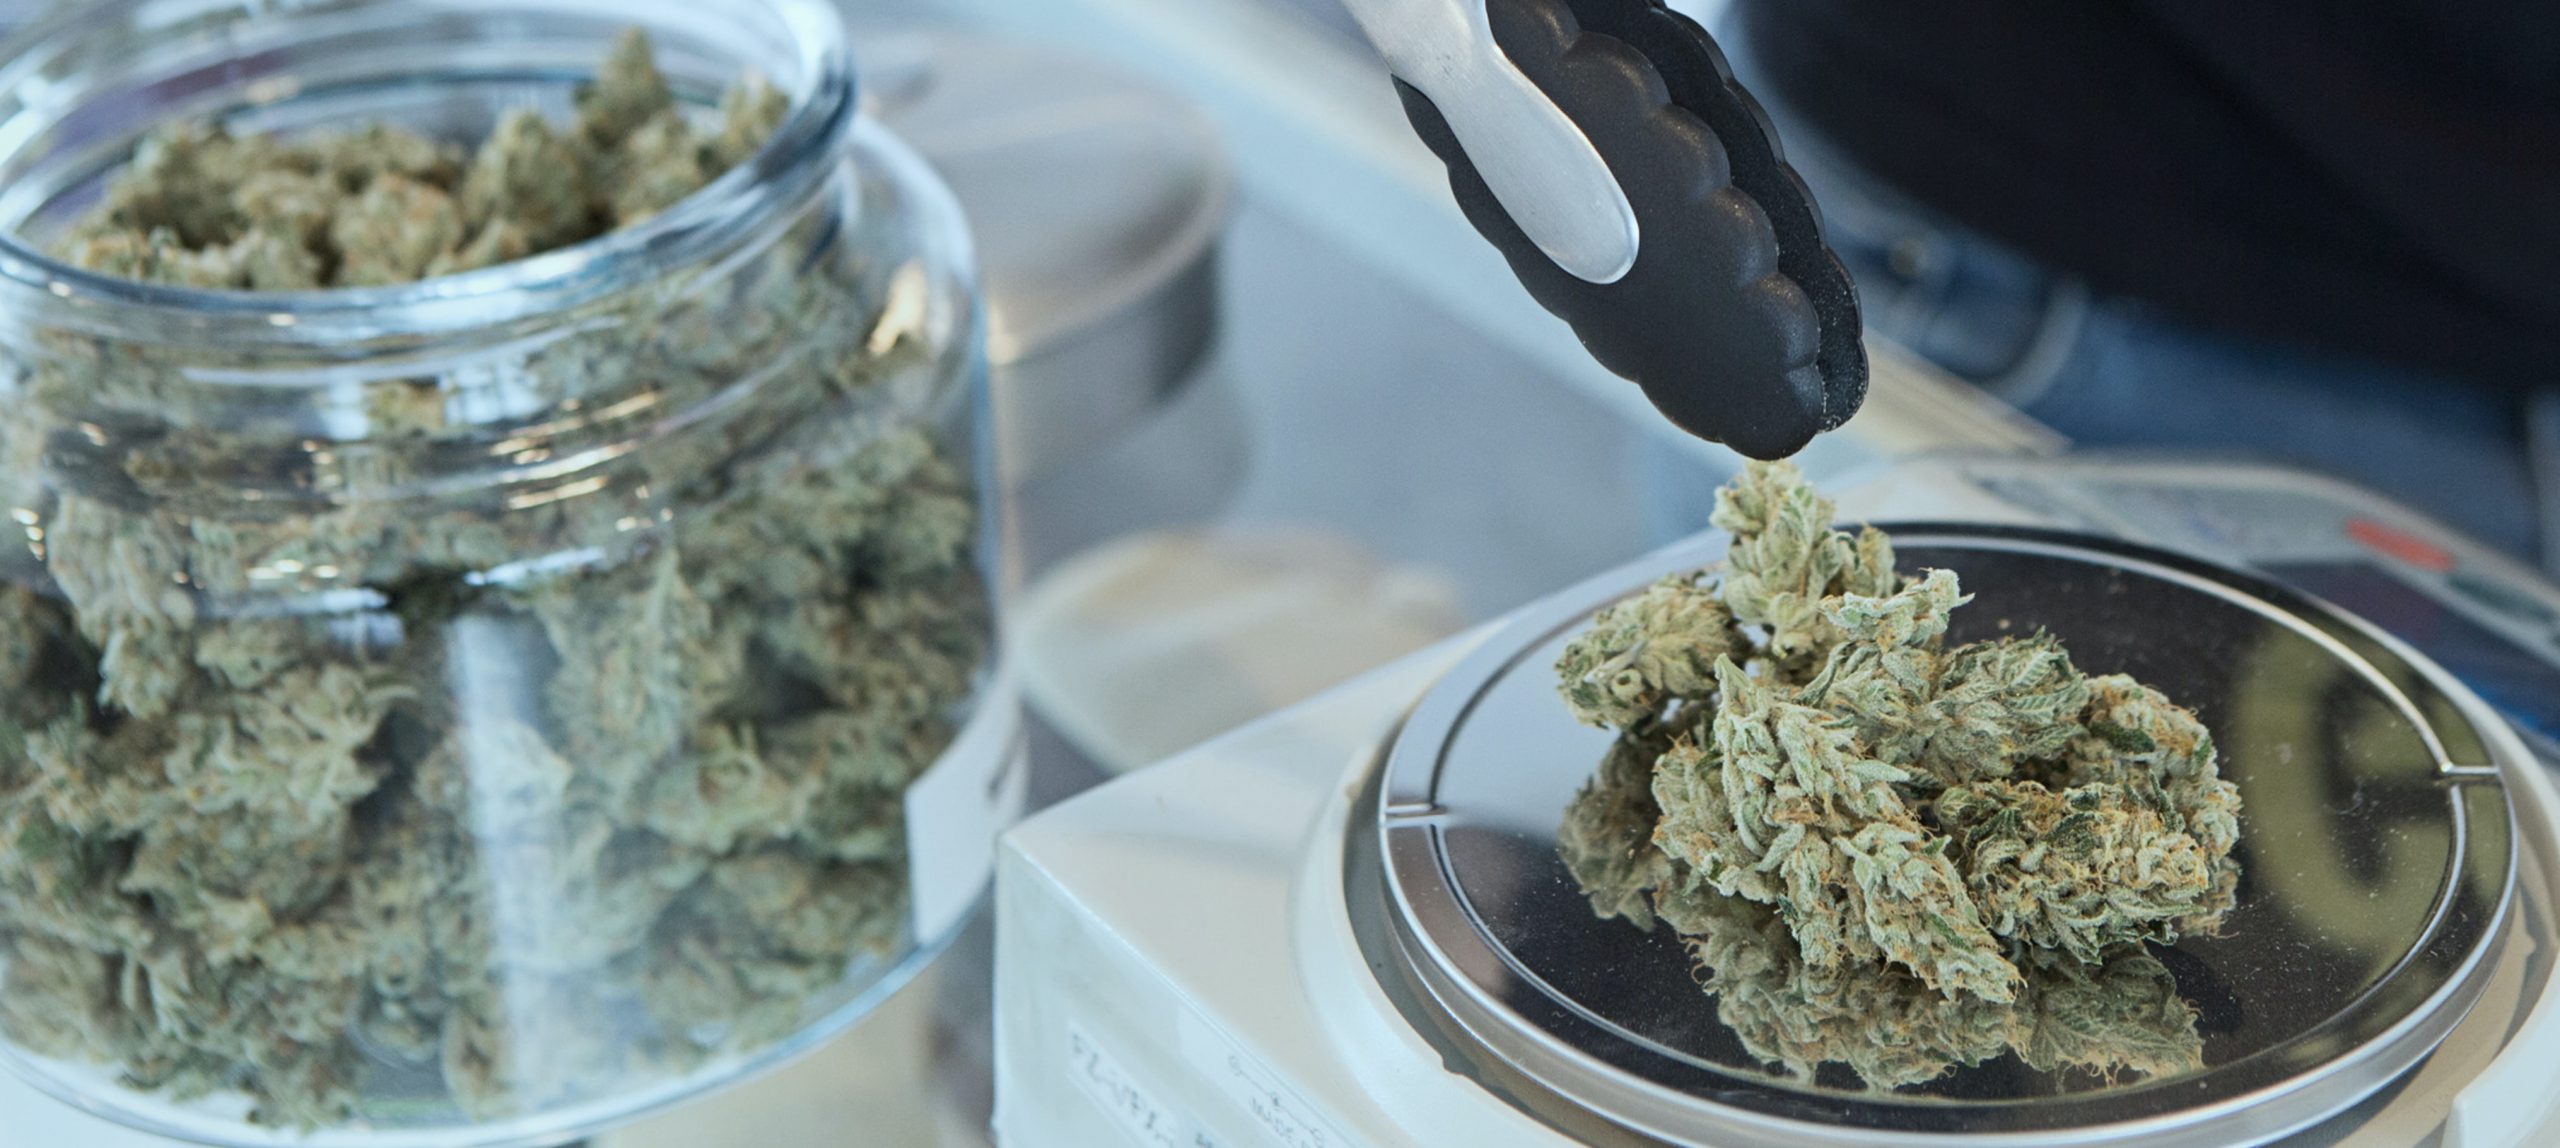 Das Foto zeigt ein Glas mit Cannabis-Blüten und eine Waage